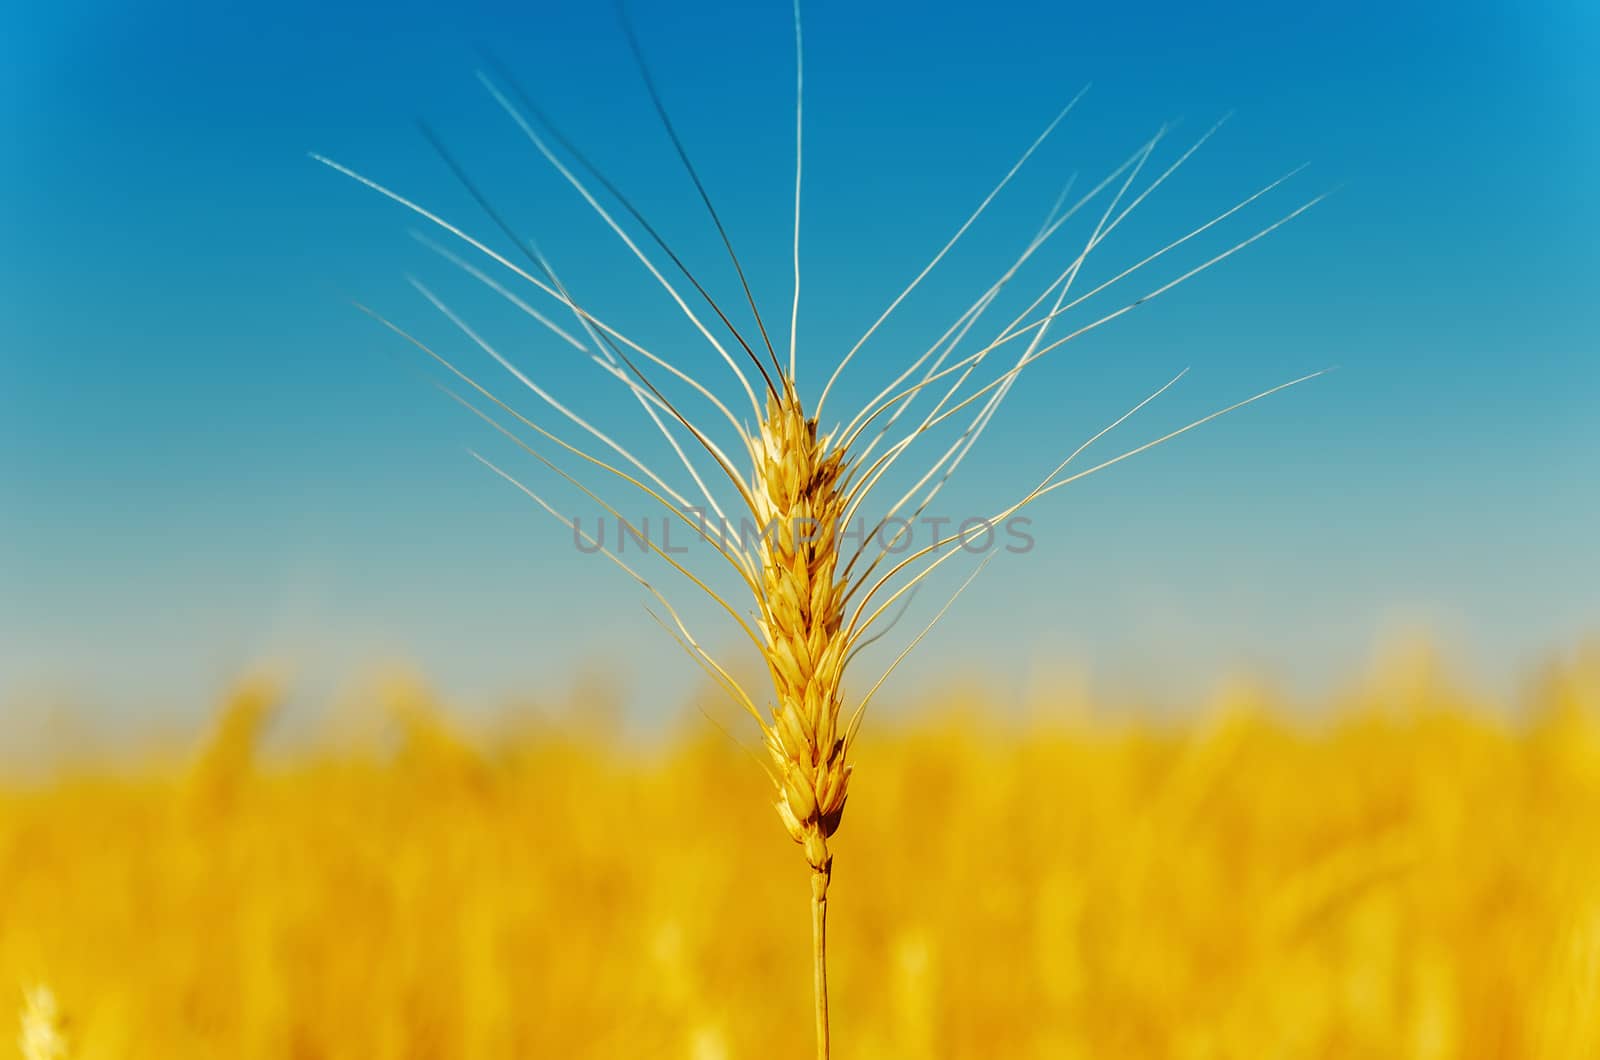 golden harvest under blue sky by mycola